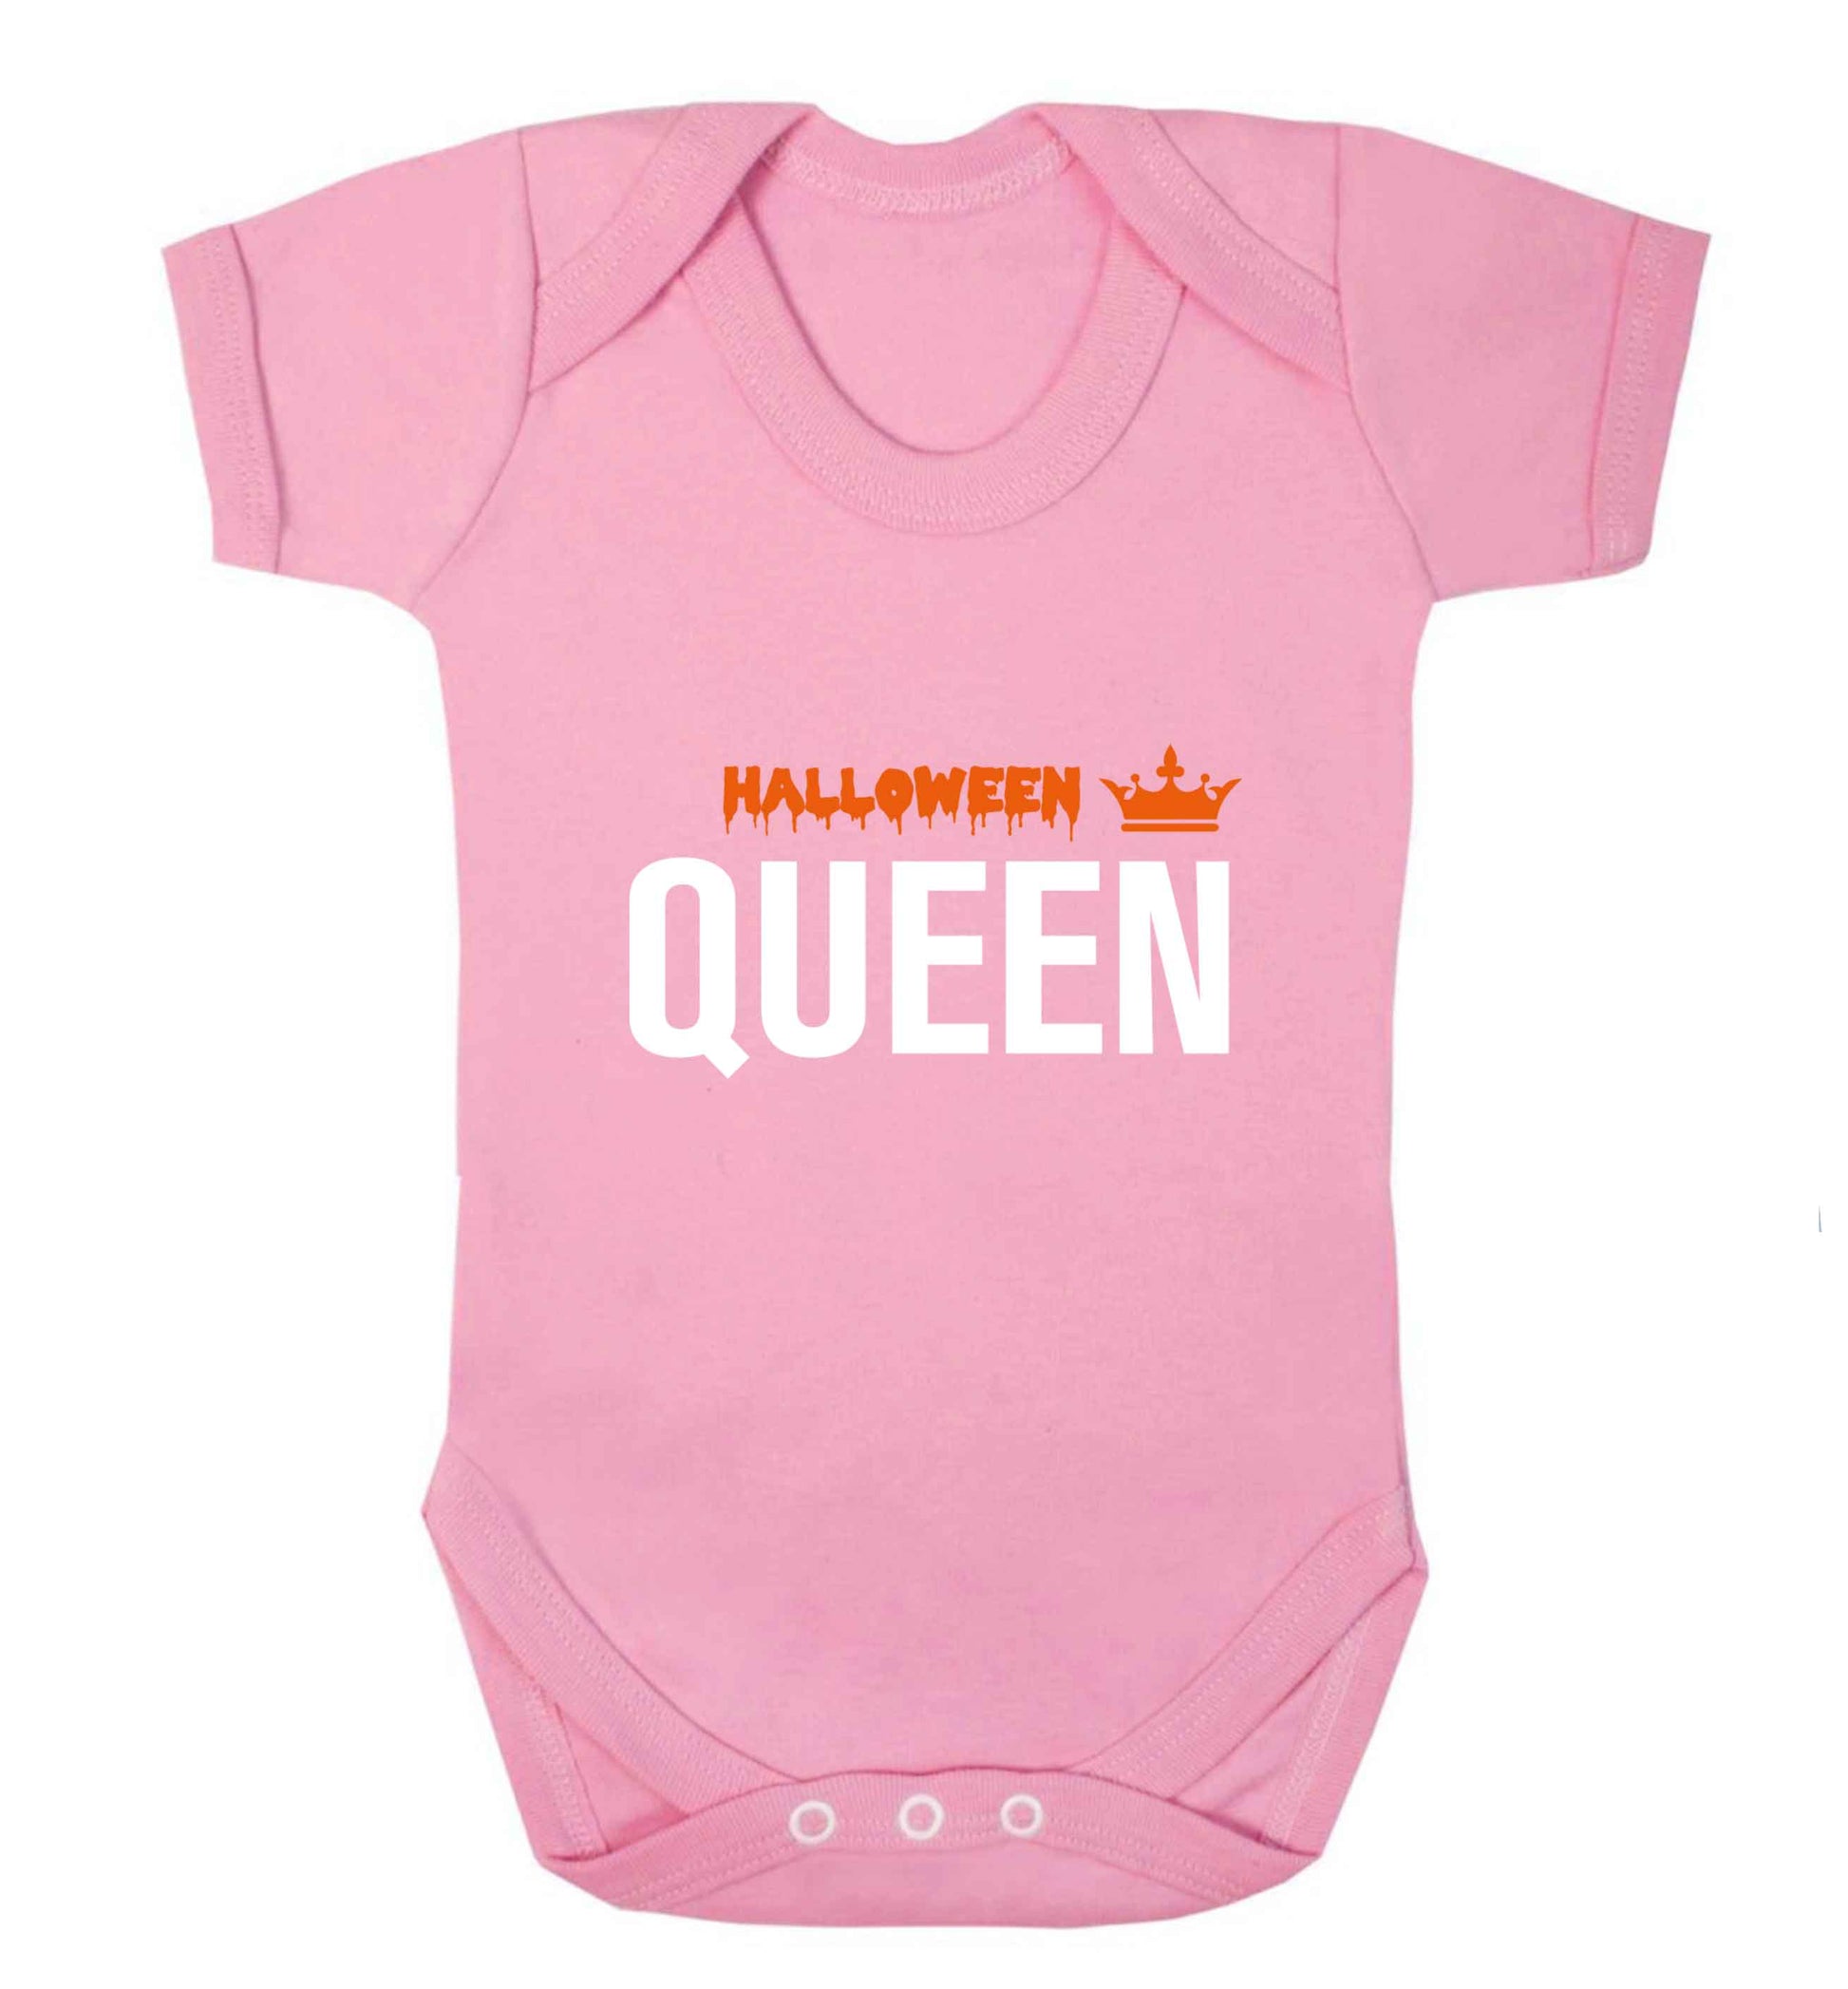 Halloween queen baby vest pale pink 18-24 months